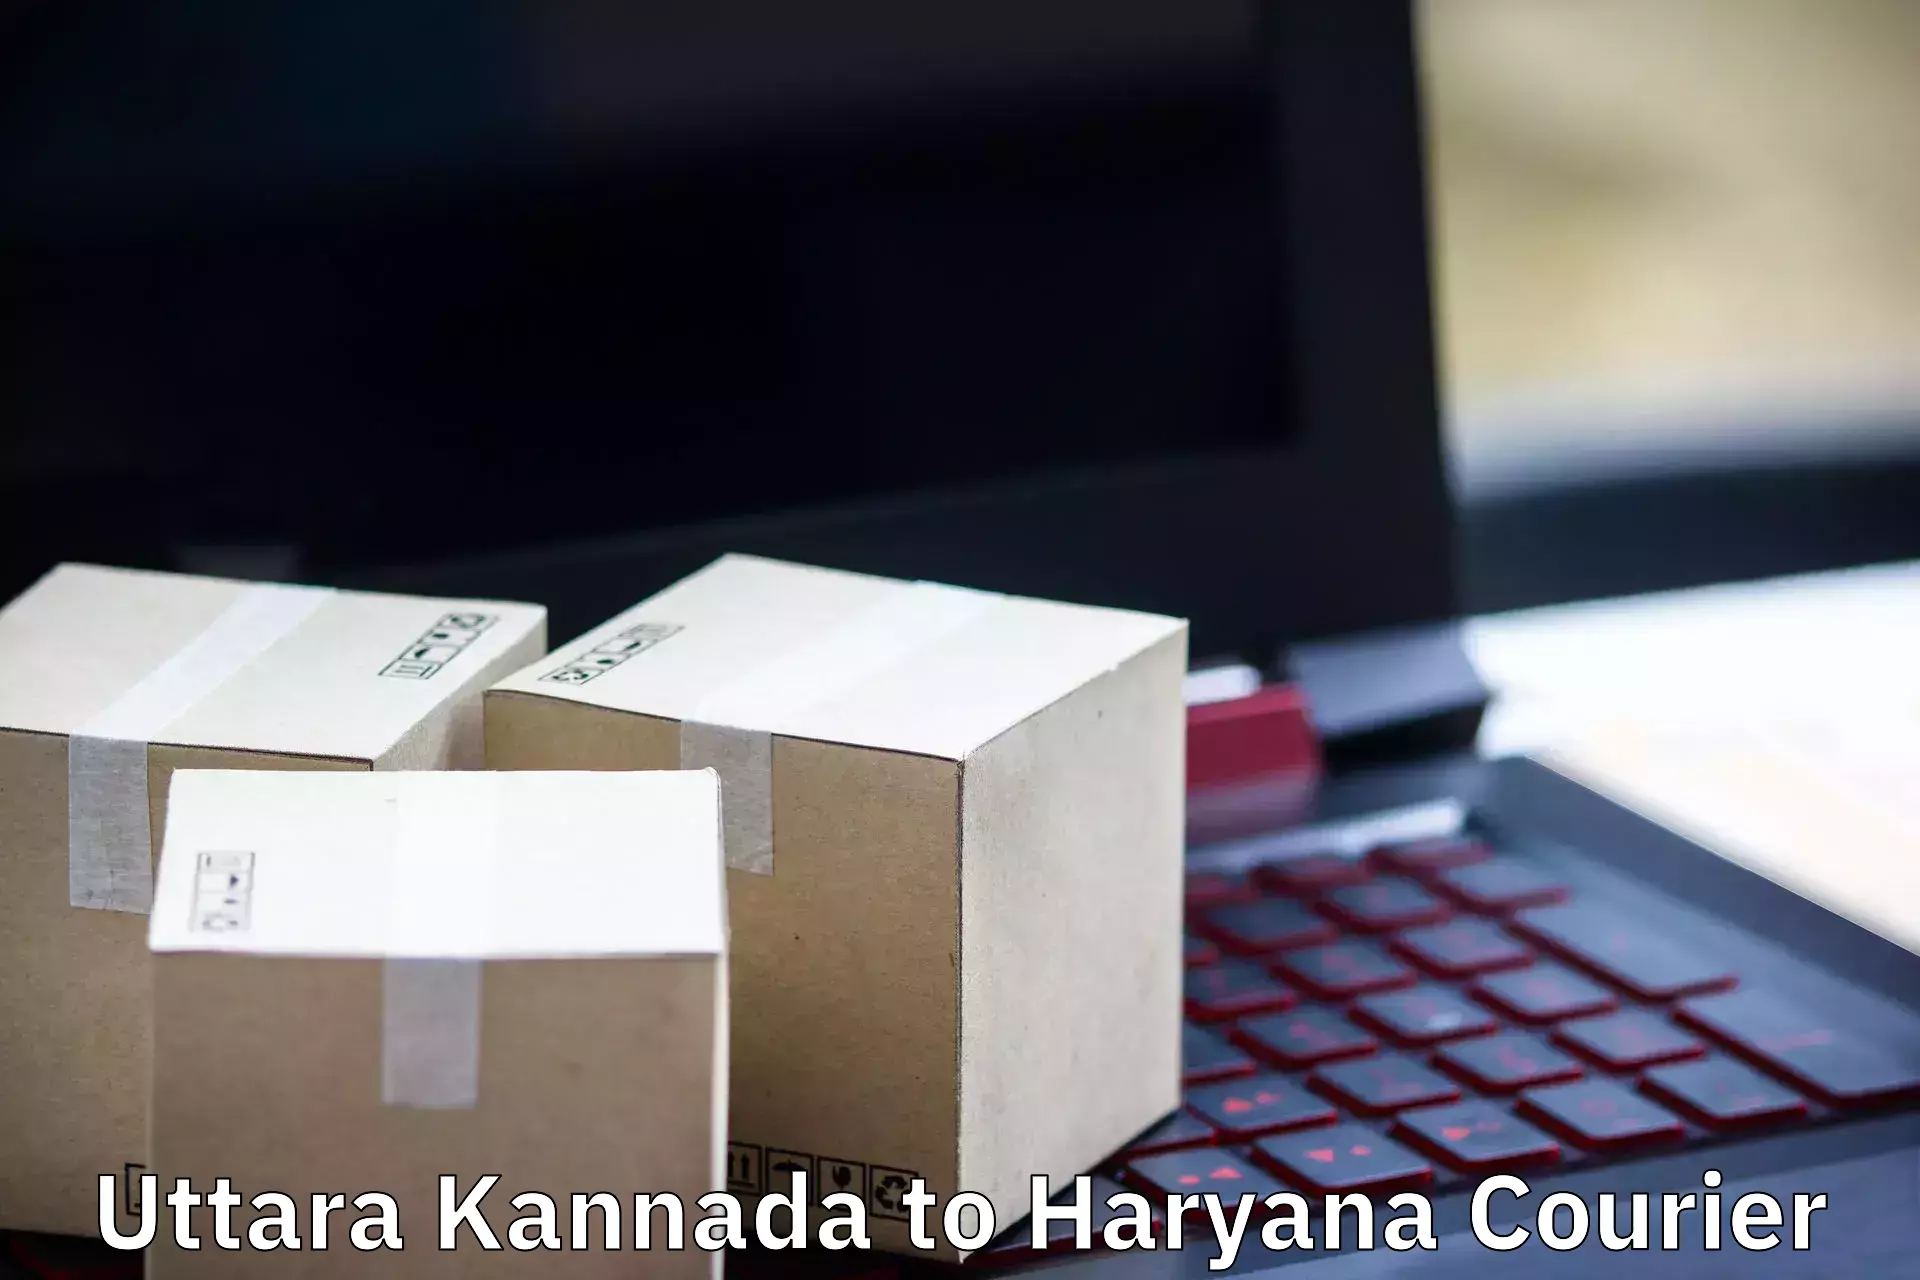 Specialized moving company Uttara Kannada to Panchkula